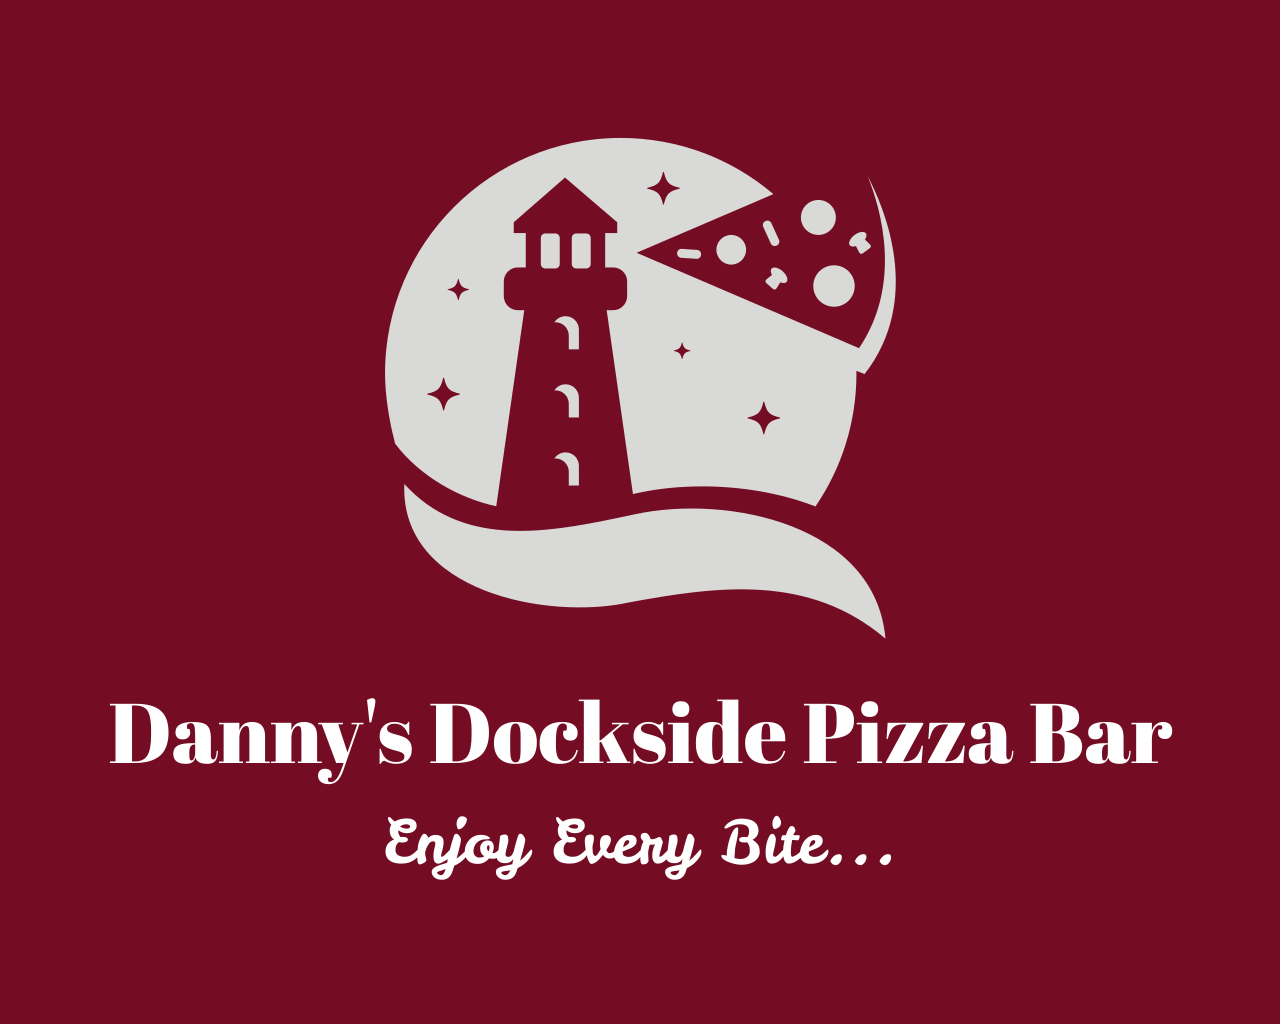 Danny's Dockside Pizza